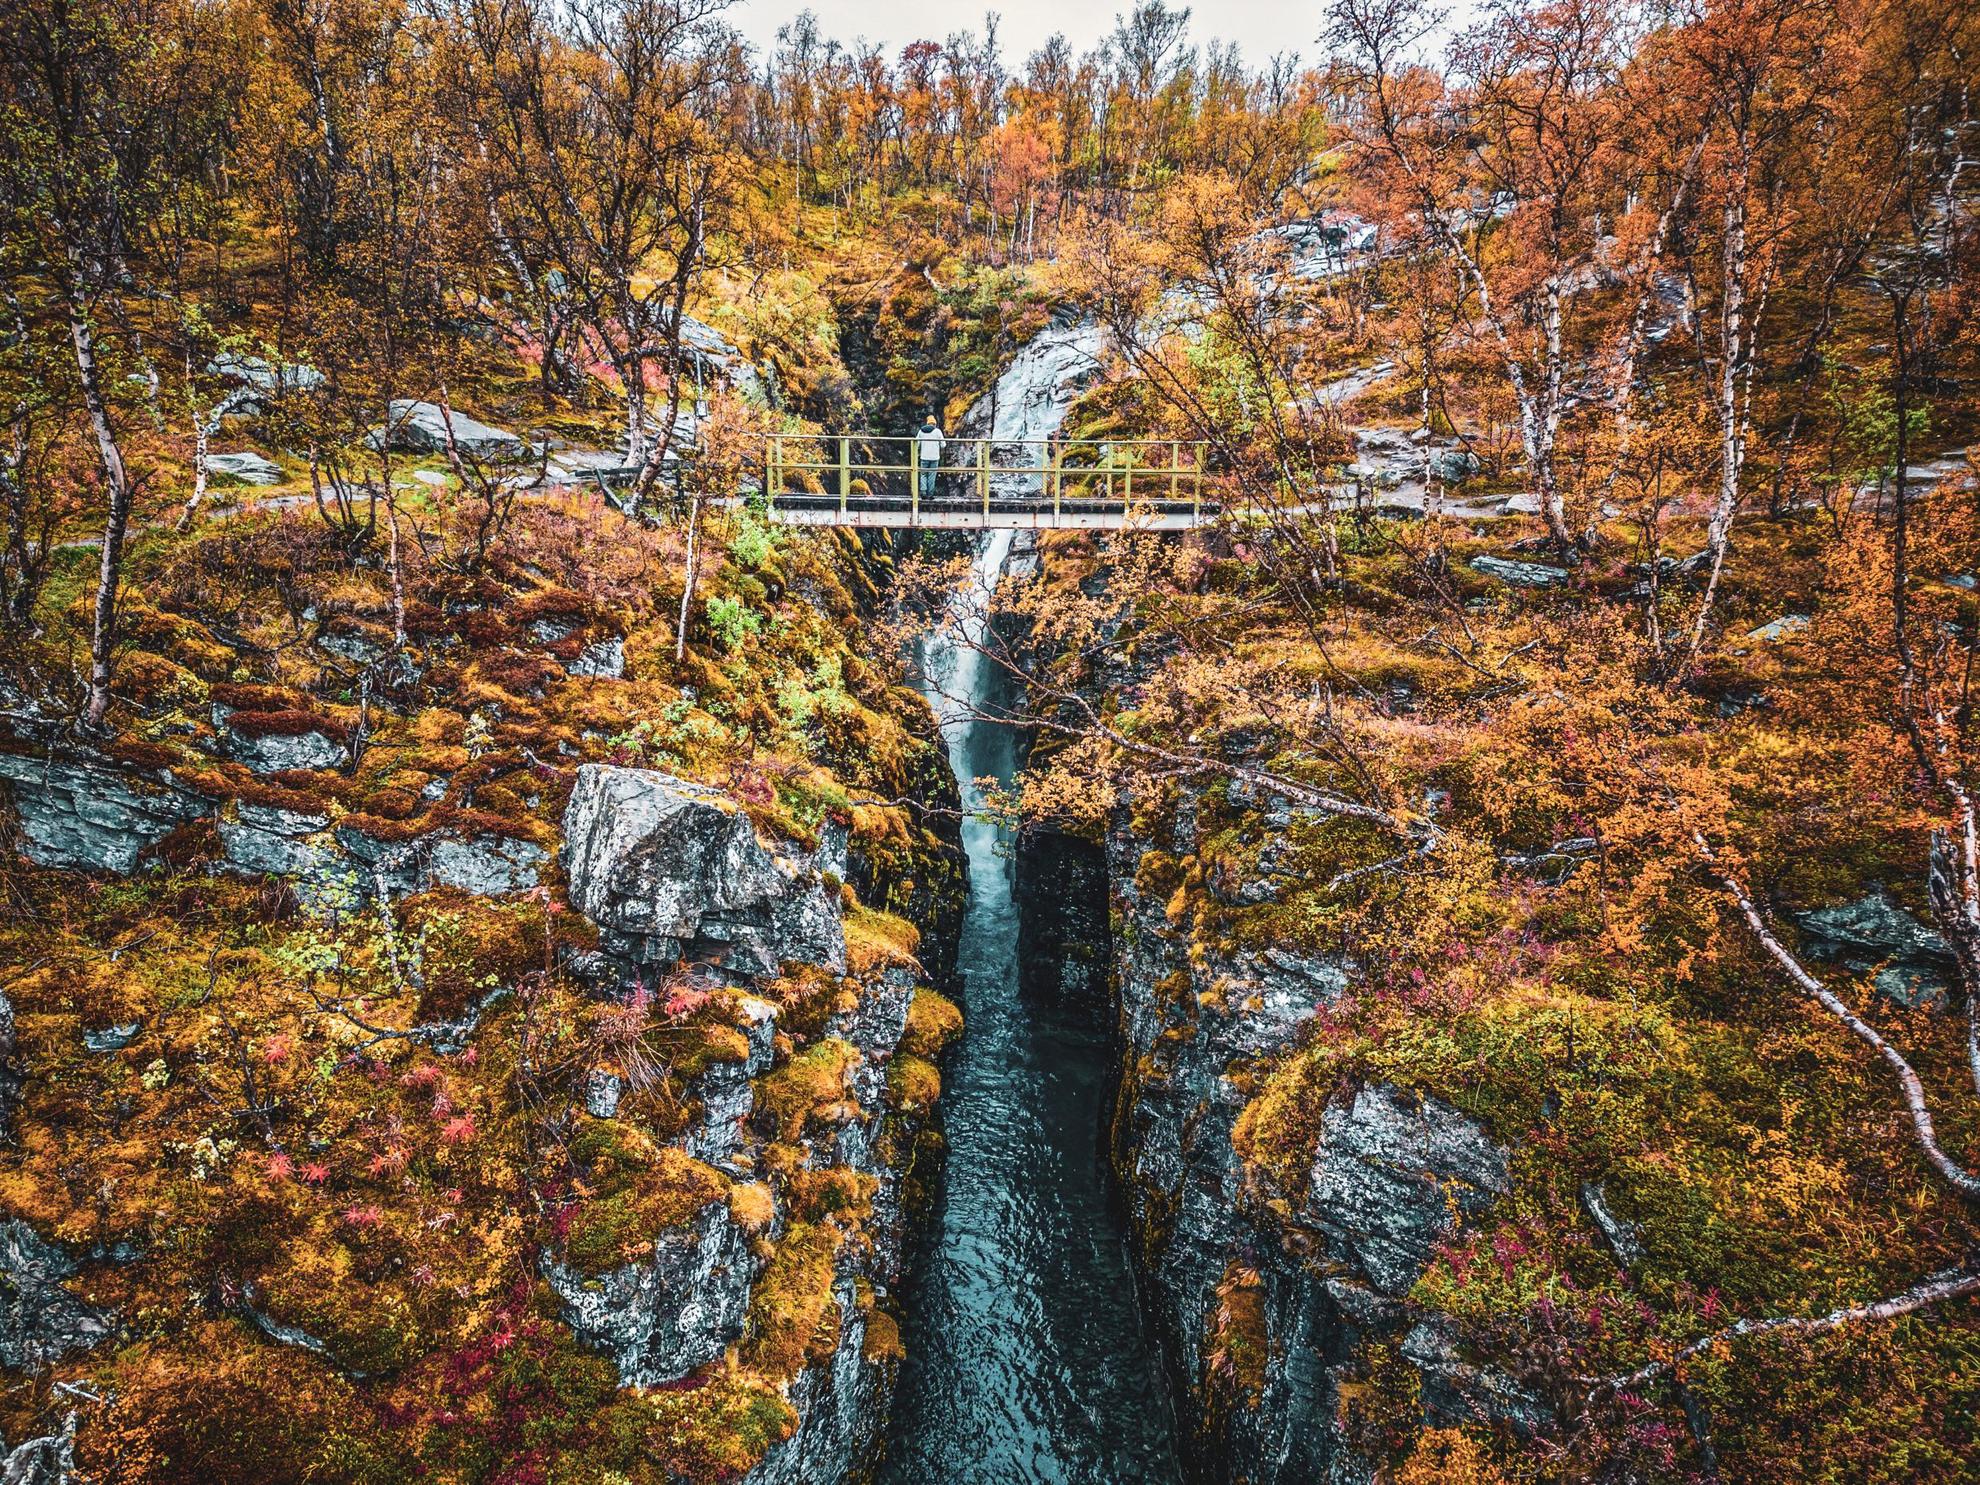 Eine Person steht auf einer kleinen Brücke vor dem brausenden Wasserfall. Der Wasserfall ist von bunten Bäumen umgeben.